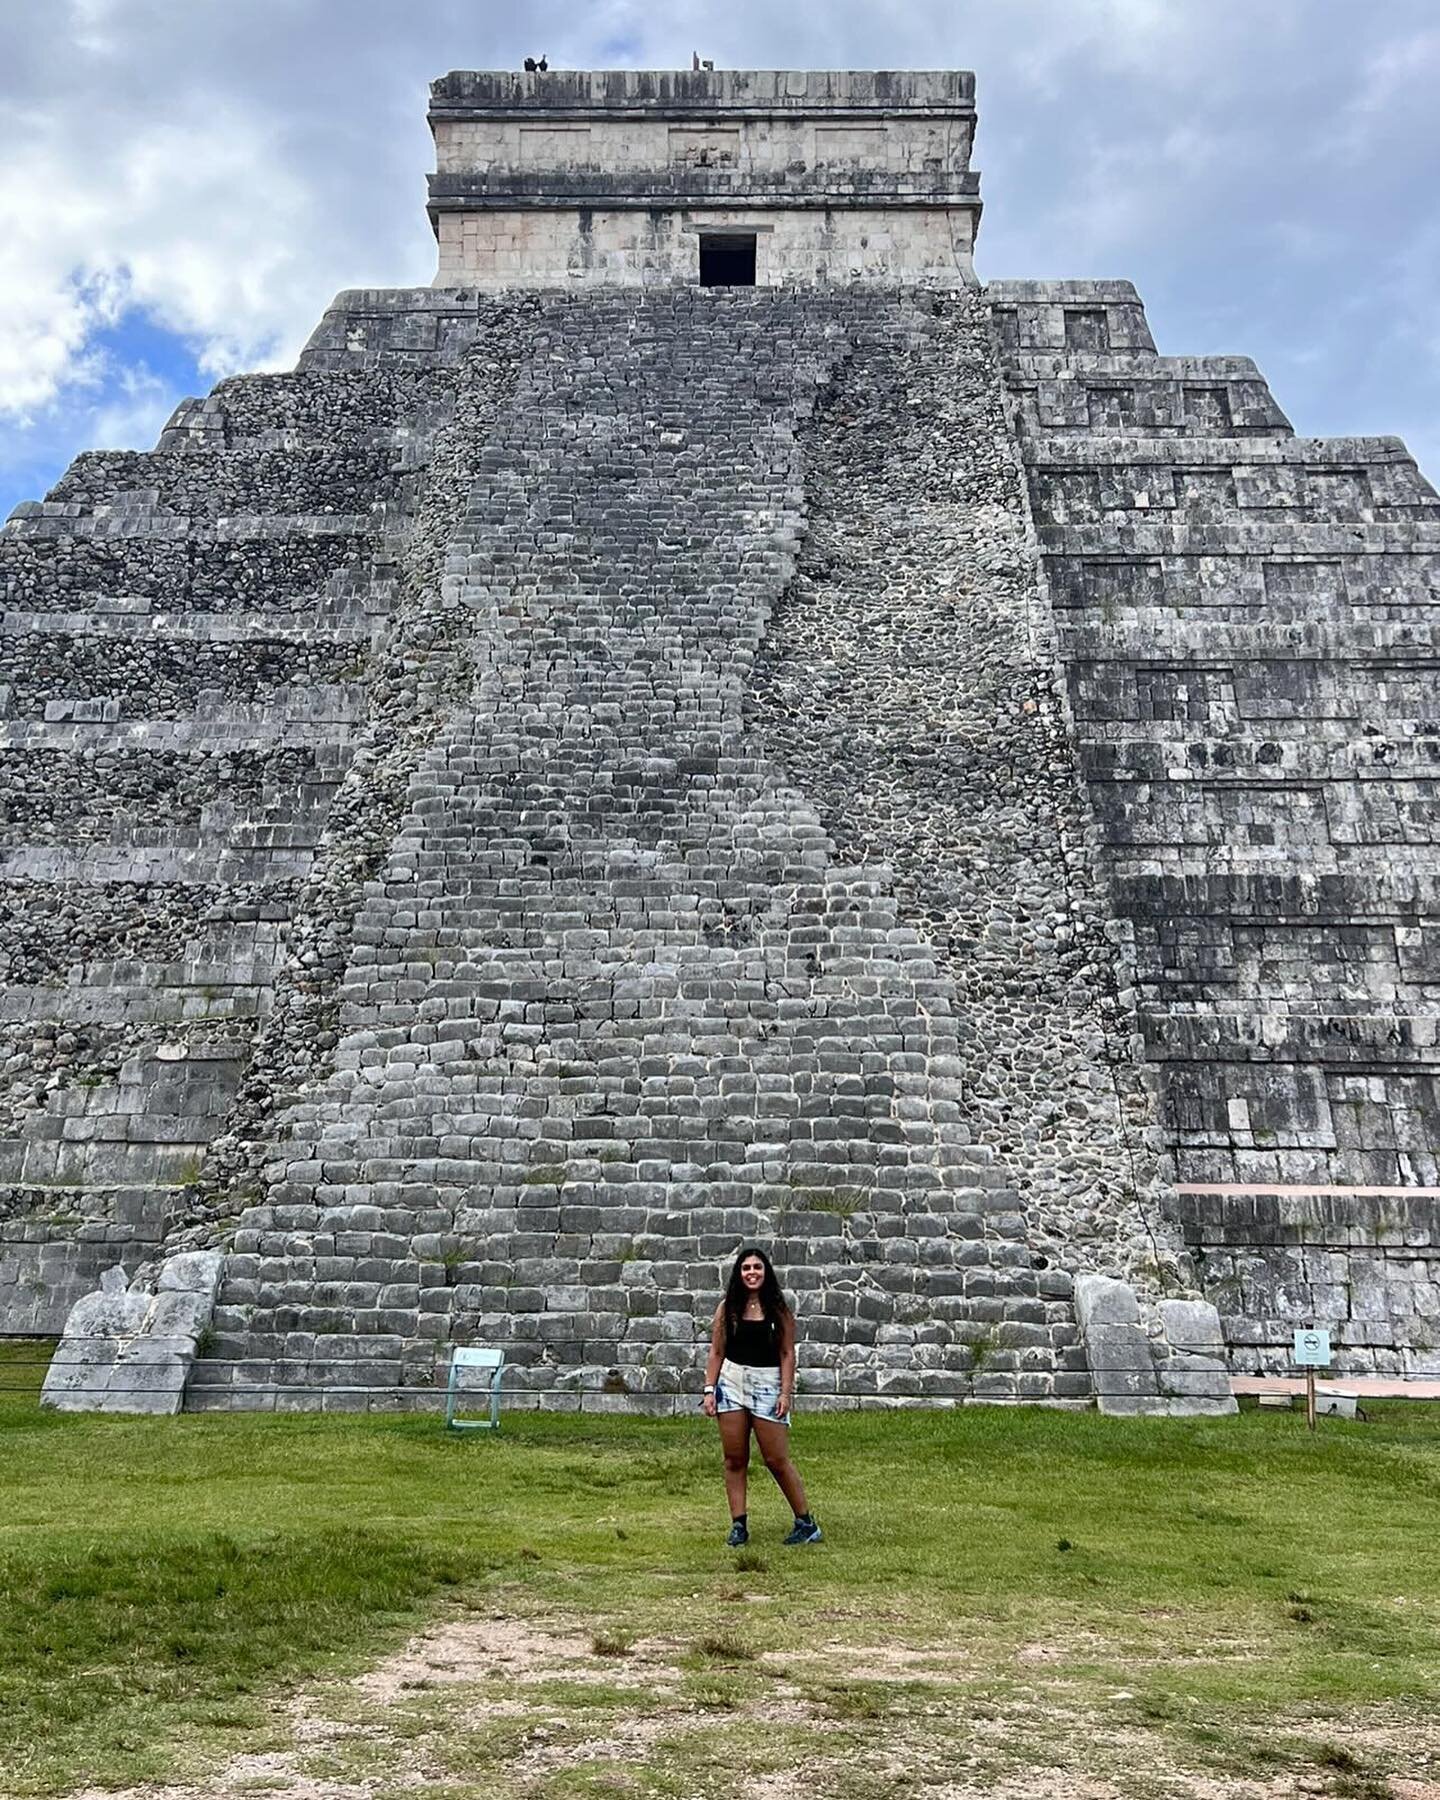 Chichen Itza! Another wonder of the world ticked off. 
.
.
.
#chichenitza #mexico #tulum #digitalnomad #digitalnomadcoach #digitalnomadlife #travelblog #travelblogger #passionpassport #worlderlust